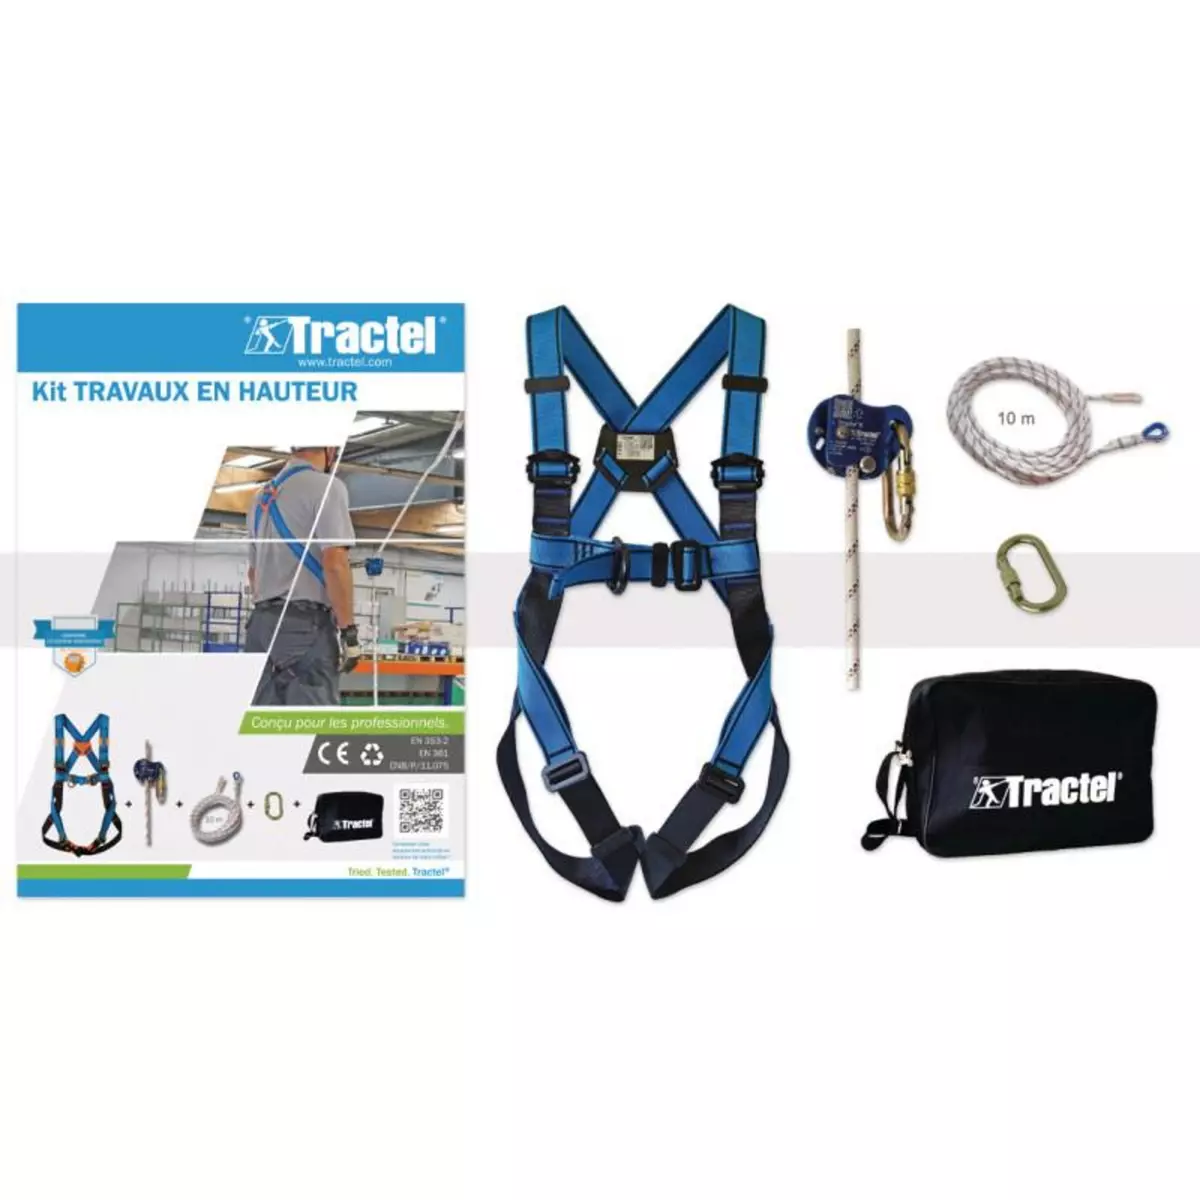 TRACTEL Kit antichute pour travaux en hauteur TM L TRACTEL 72562